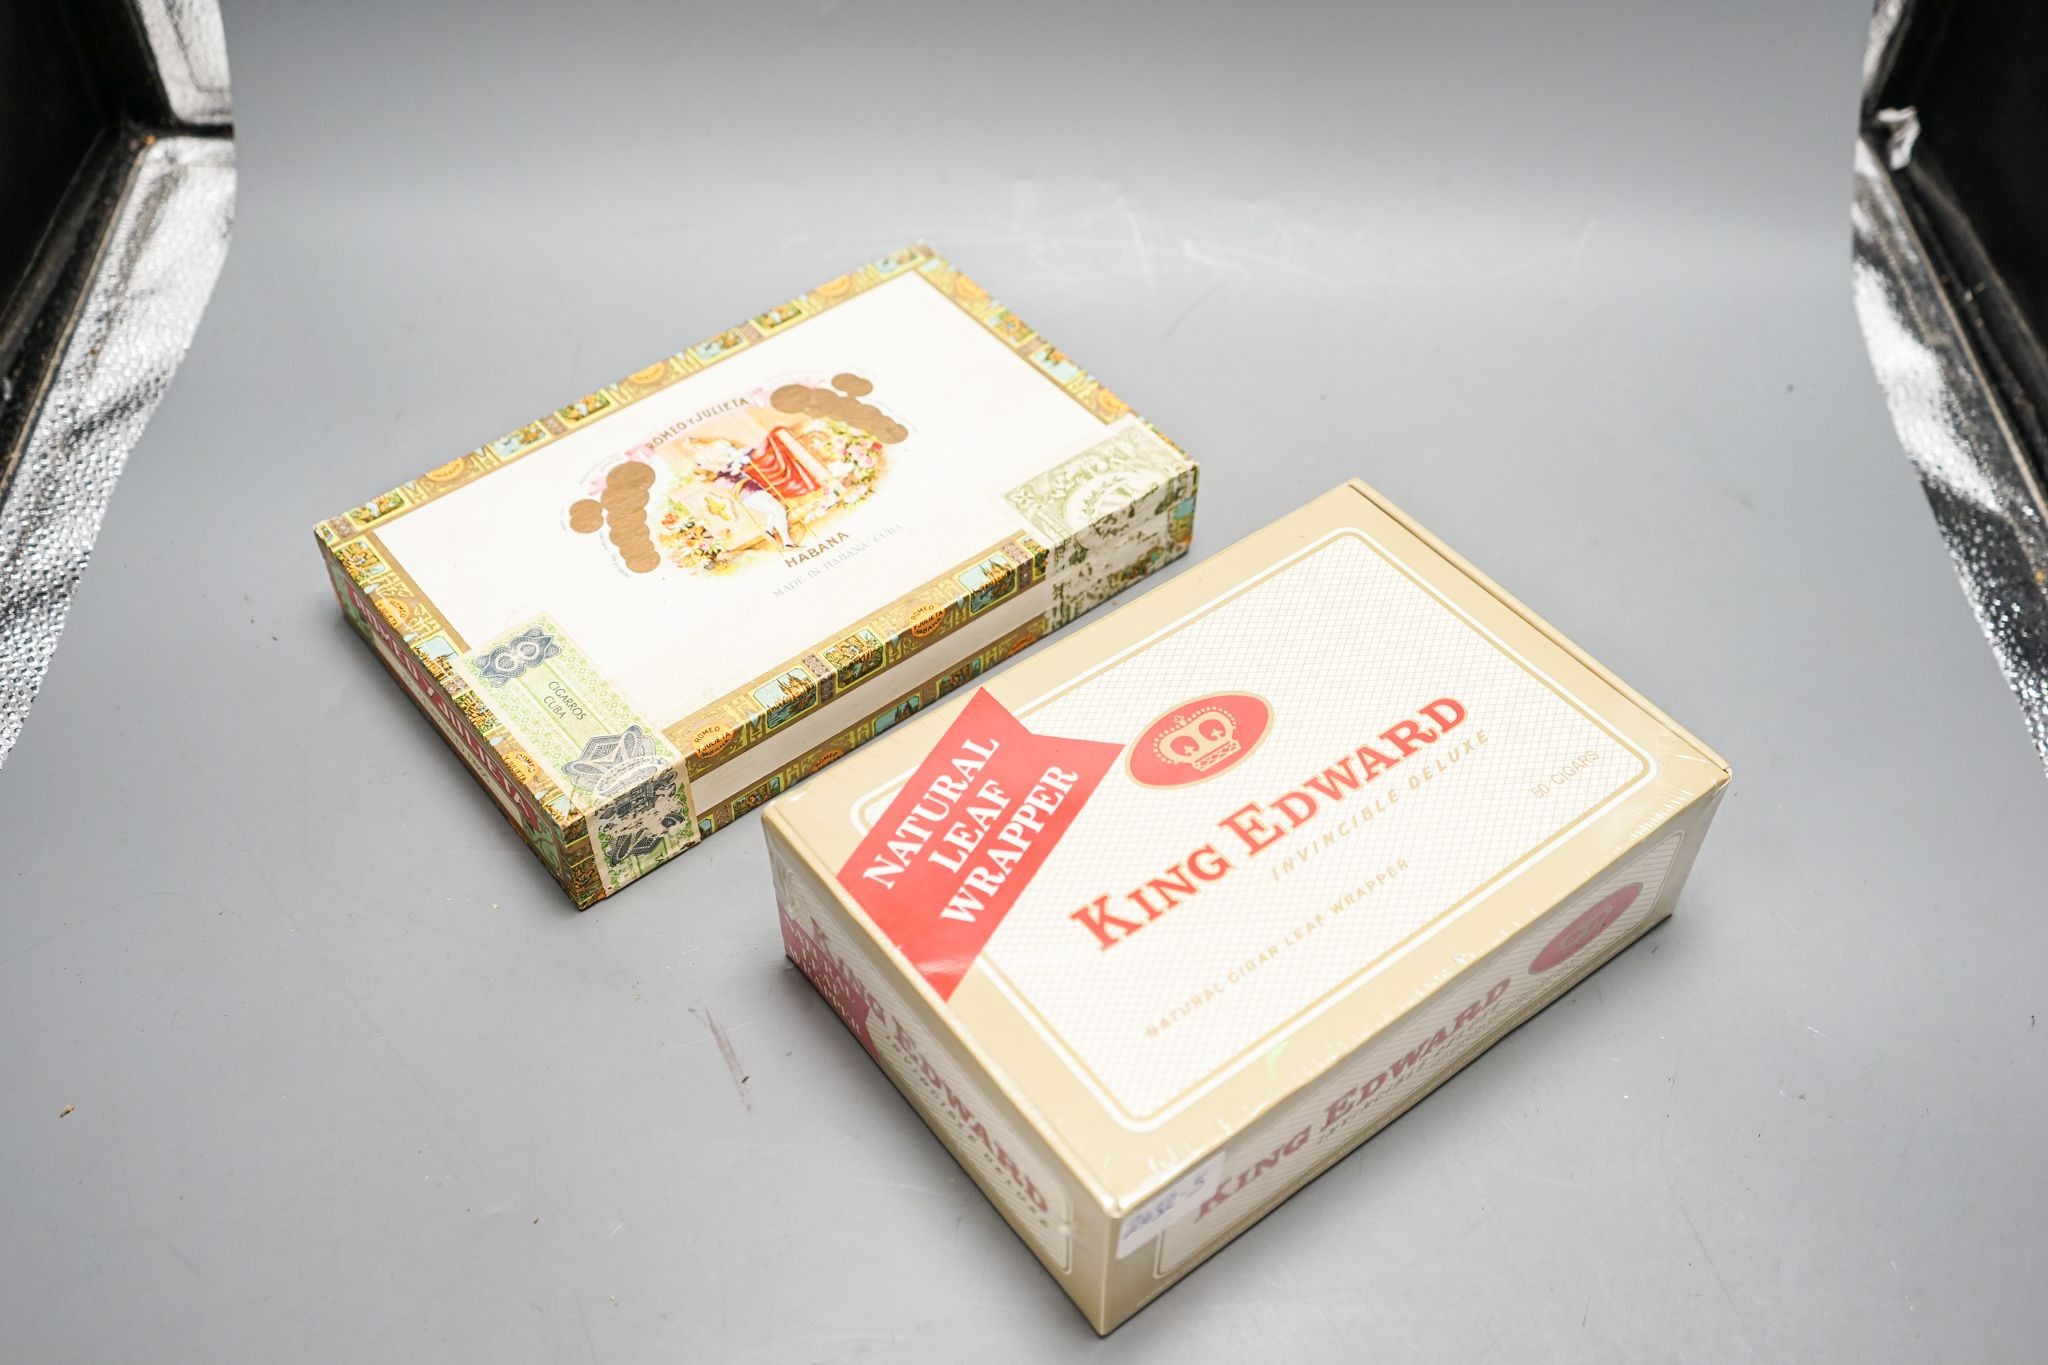 A box of Romeo and Julietta cigars and King Edward cigars